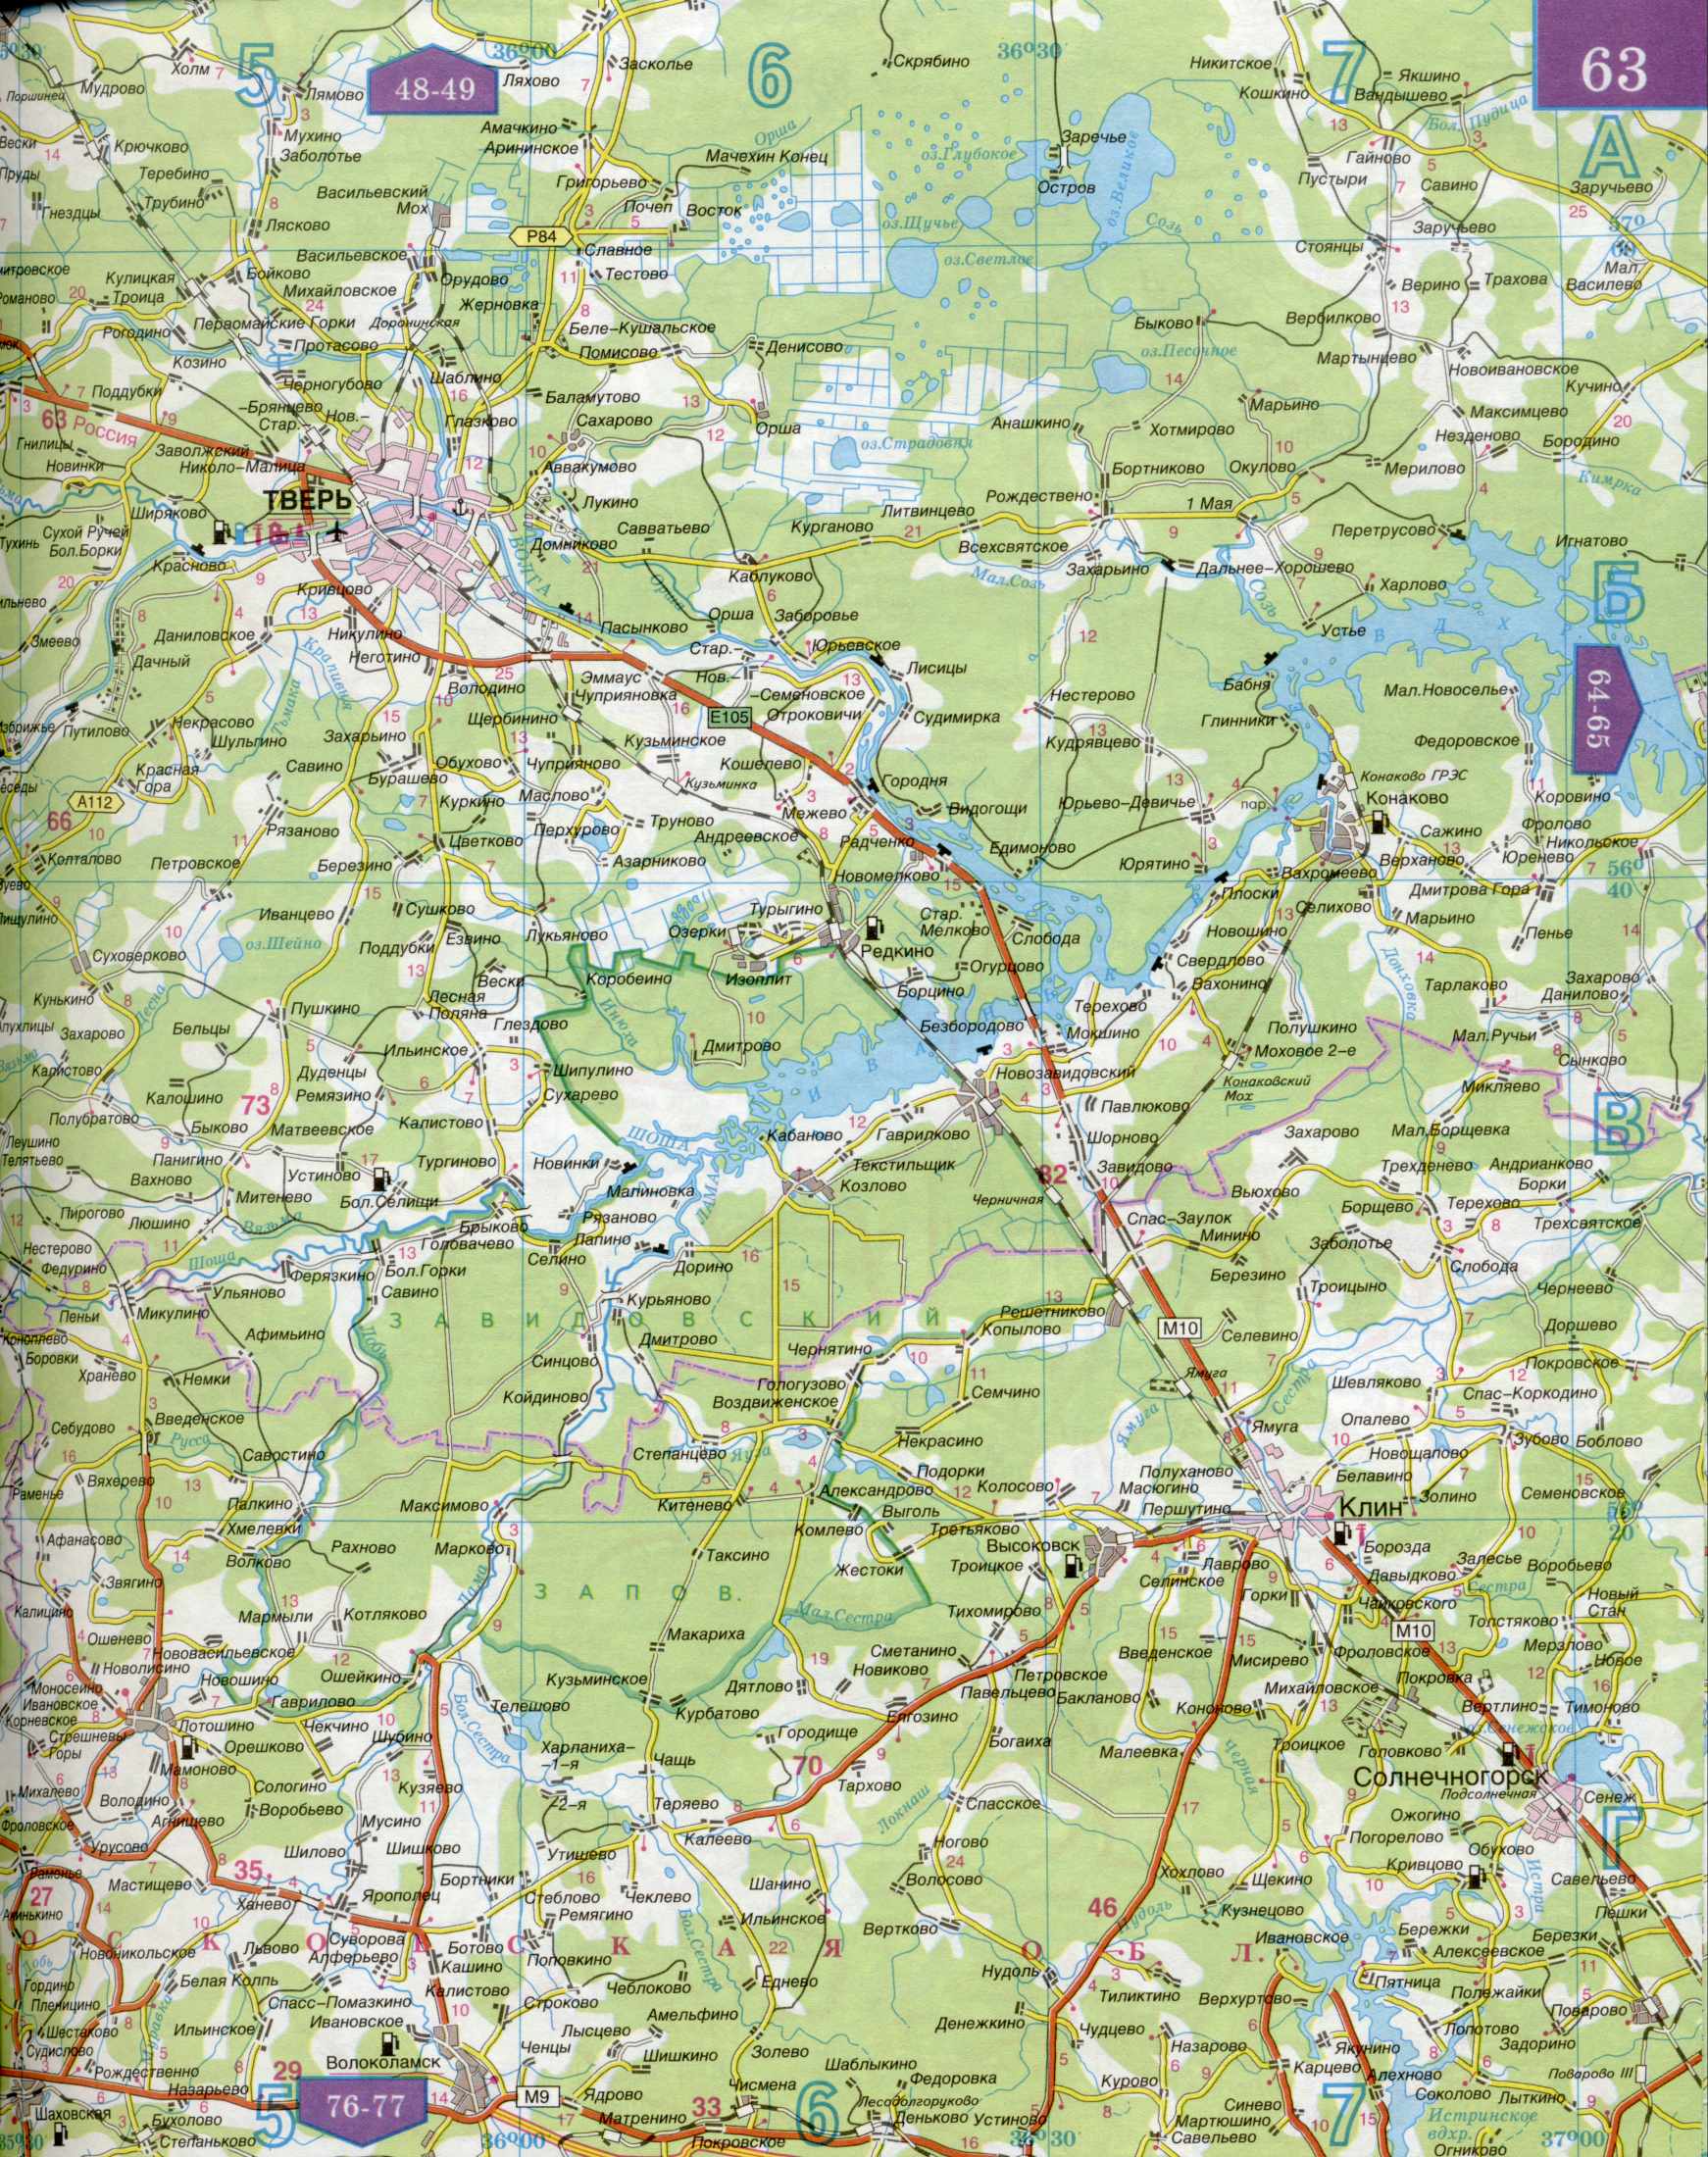 Карта автомобильных дорог Московской области 1см=5км. Подробная карта автомобильных дорог  - Московская область и прилегающие территории. Скачать бесплатно, A0 - 